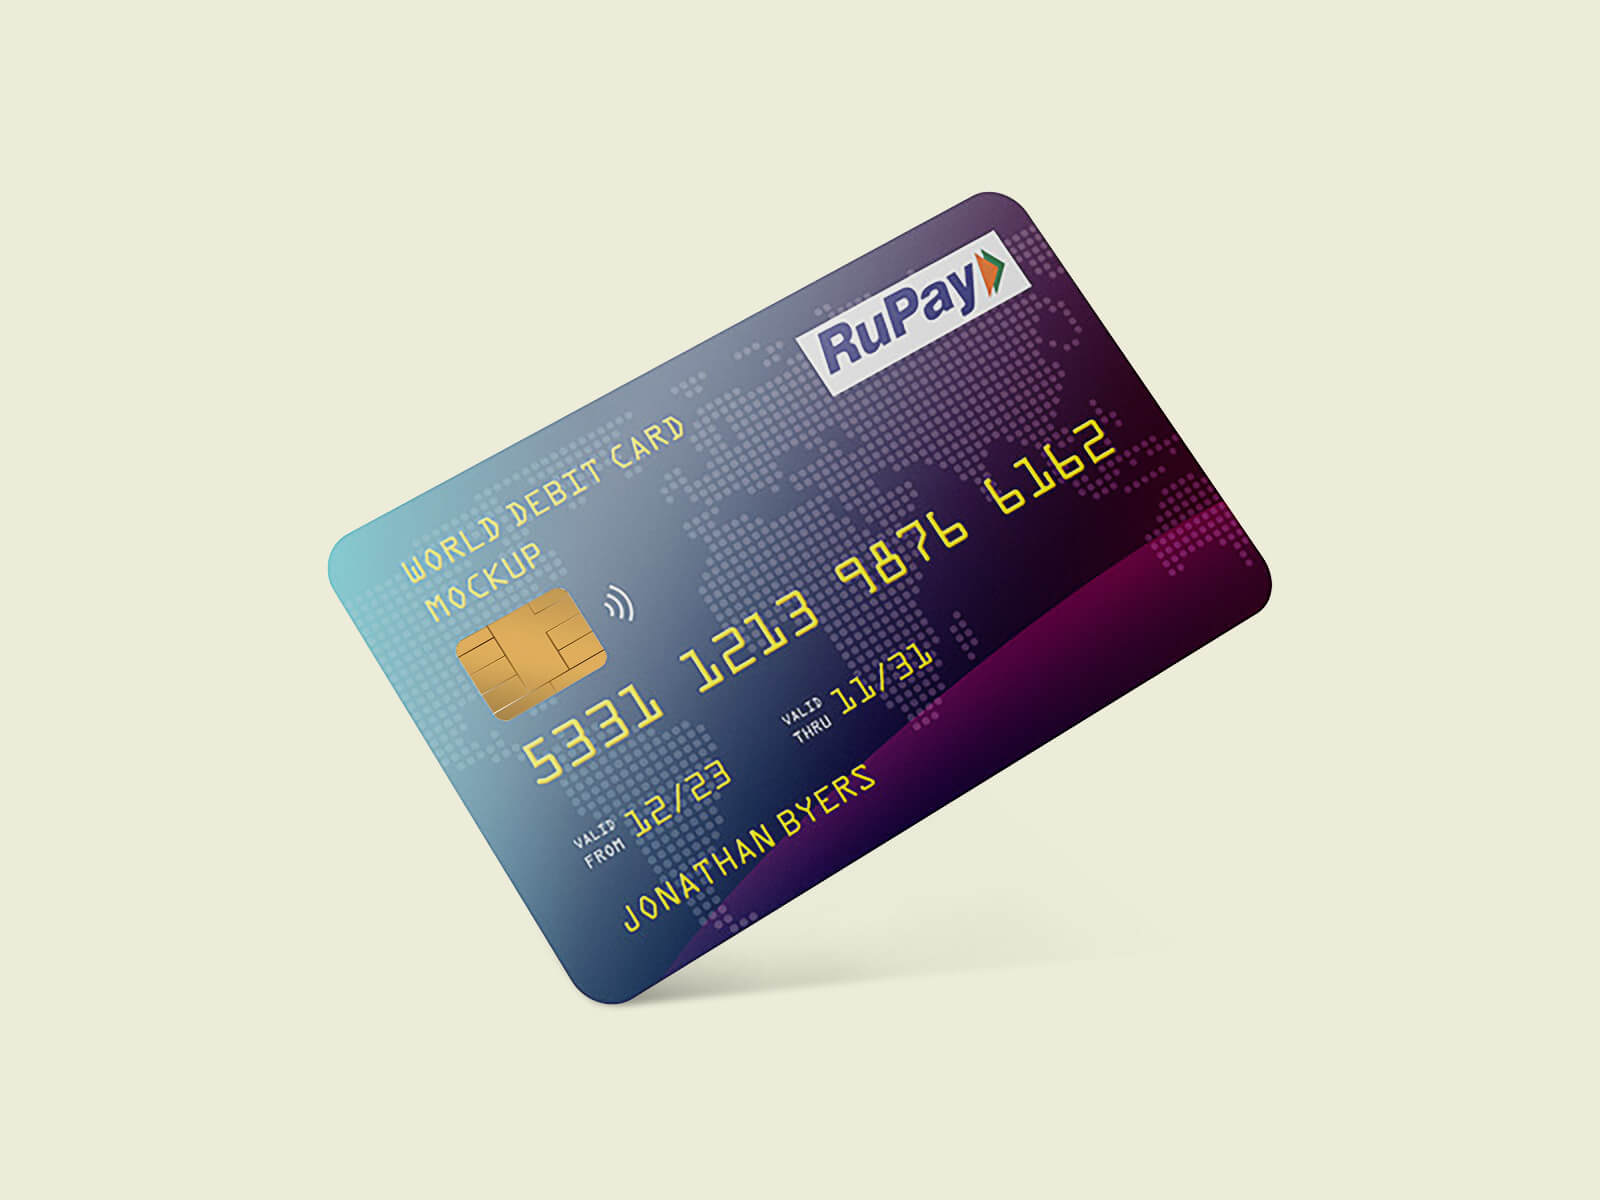 Maqueta de tarjeta de crédito plástico/débito